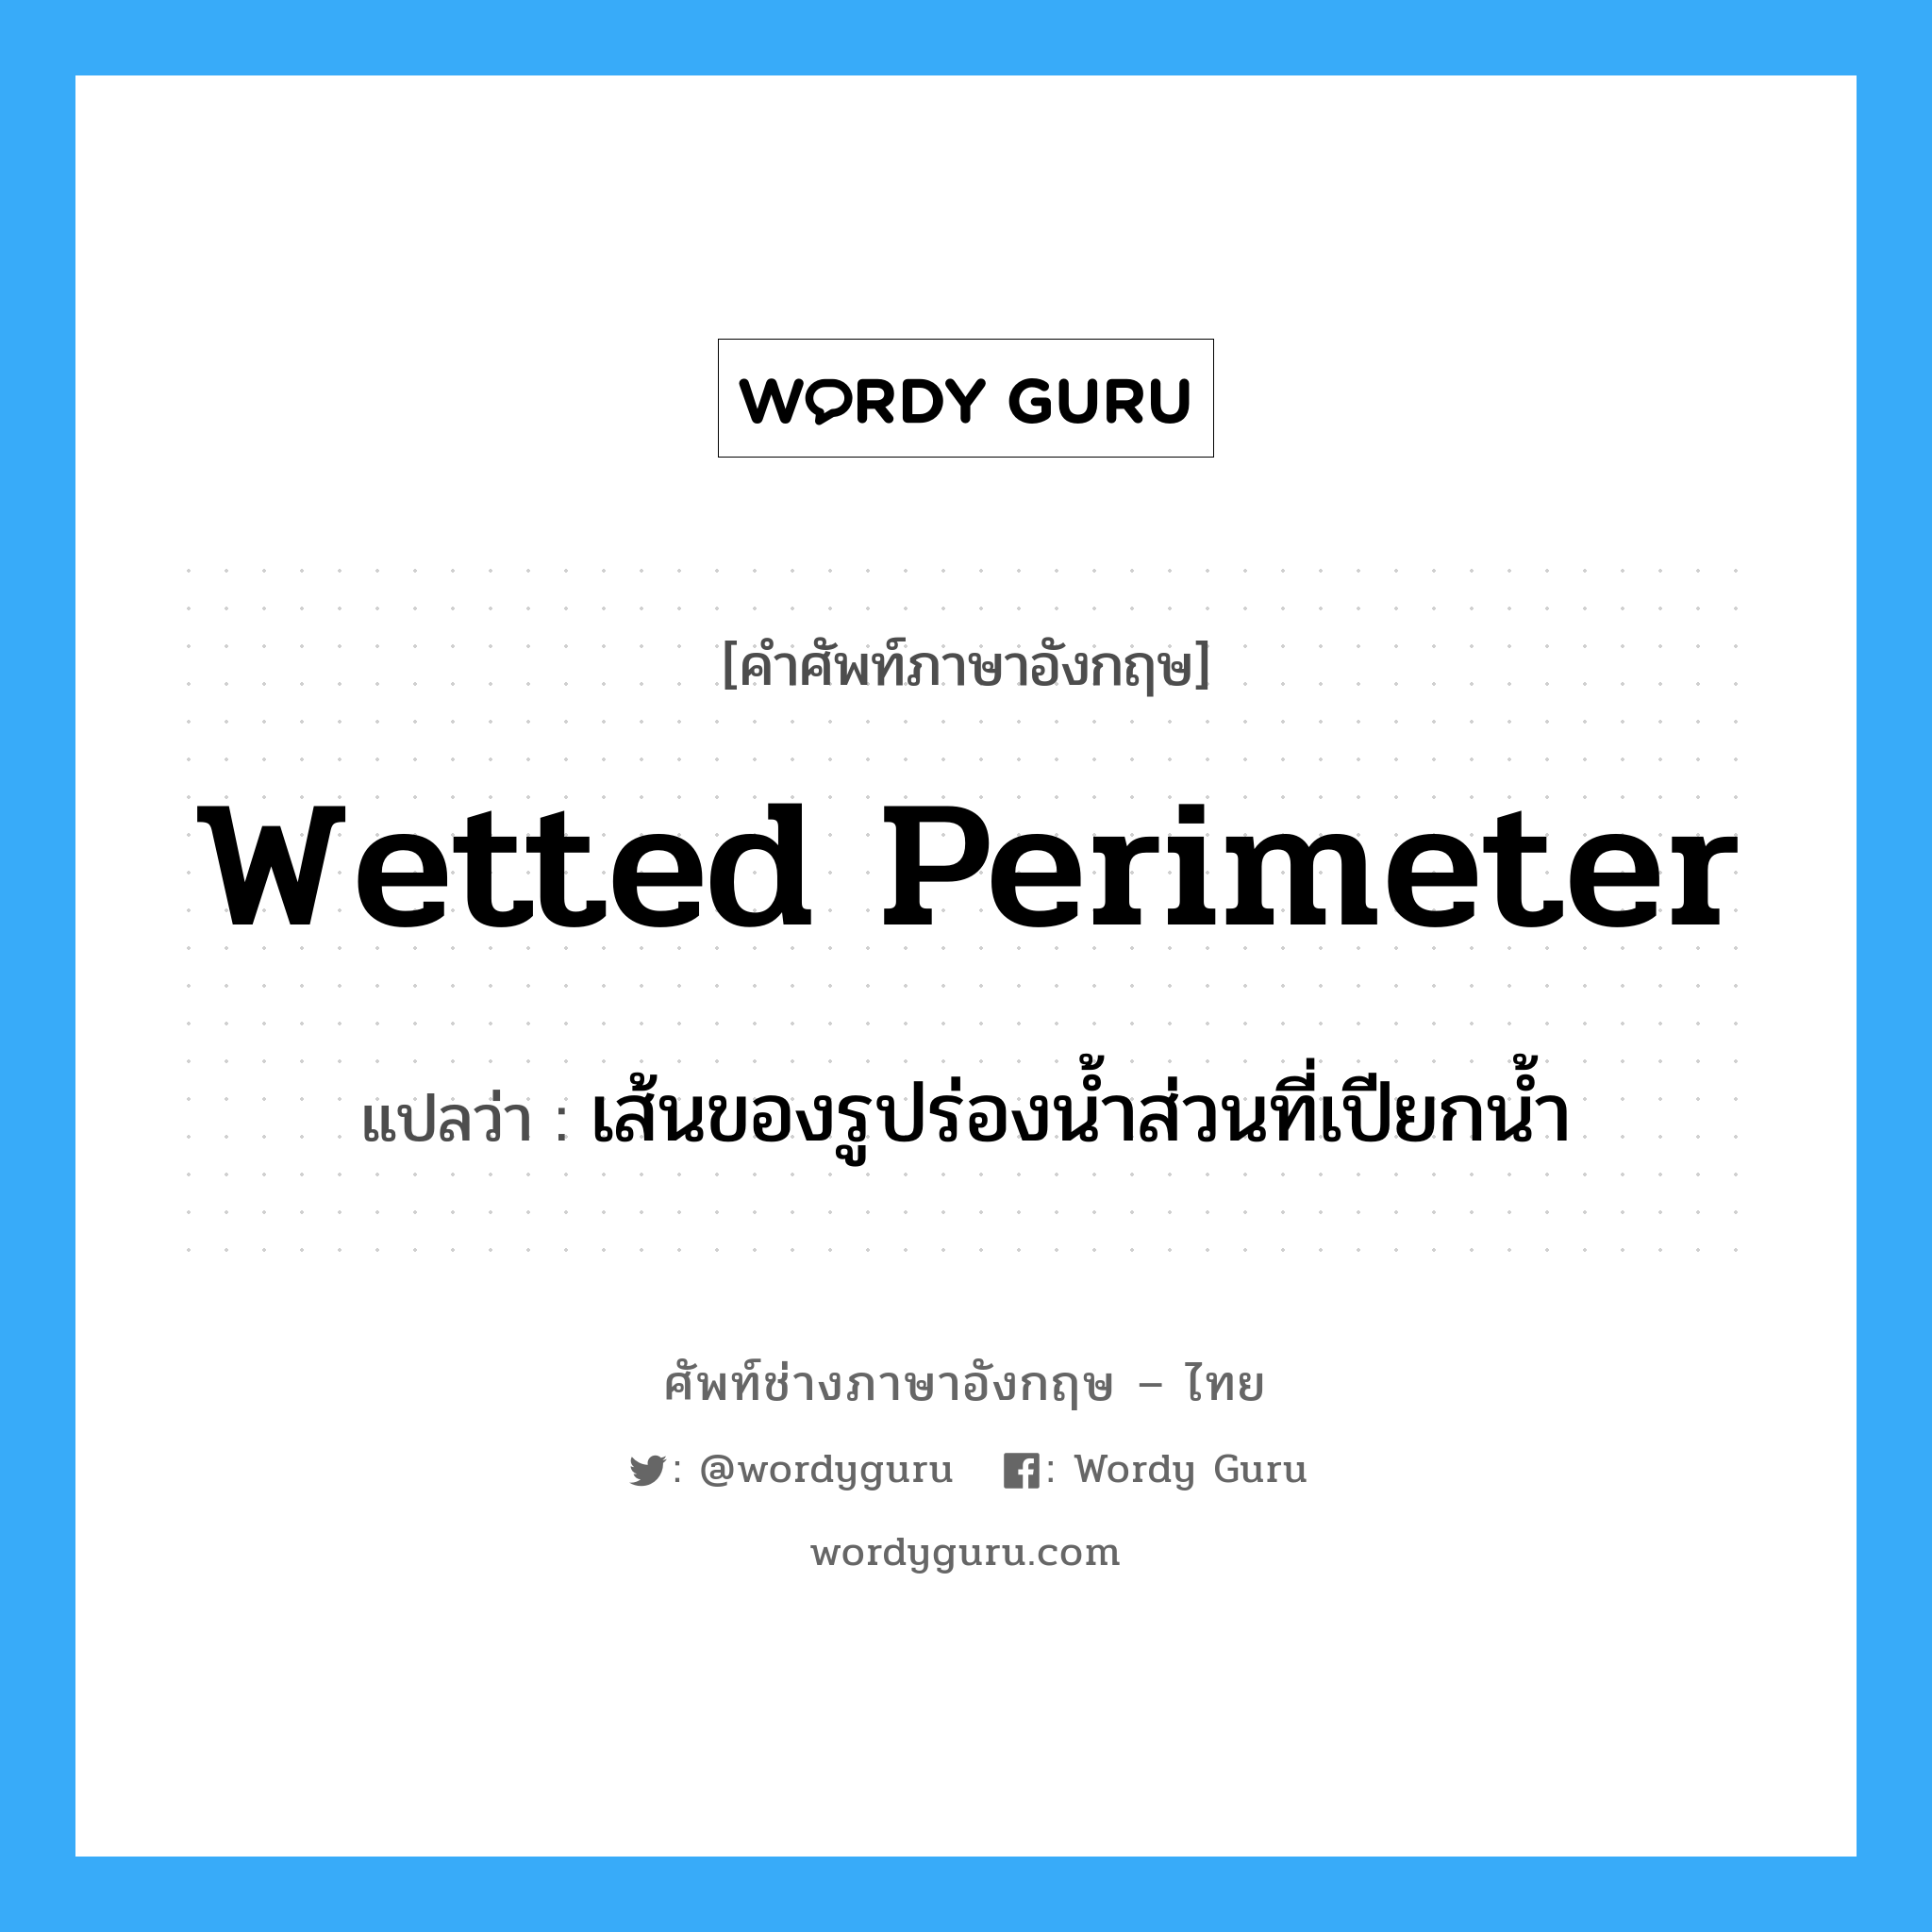 wetted perimeter แปลว่า?, คำศัพท์ช่างภาษาอังกฤษ - ไทย wetted perimeter คำศัพท์ภาษาอังกฤษ wetted perimeter แปลว่า เส้นของรูปร่องน้ำส่วนที่เปียกน้ำ